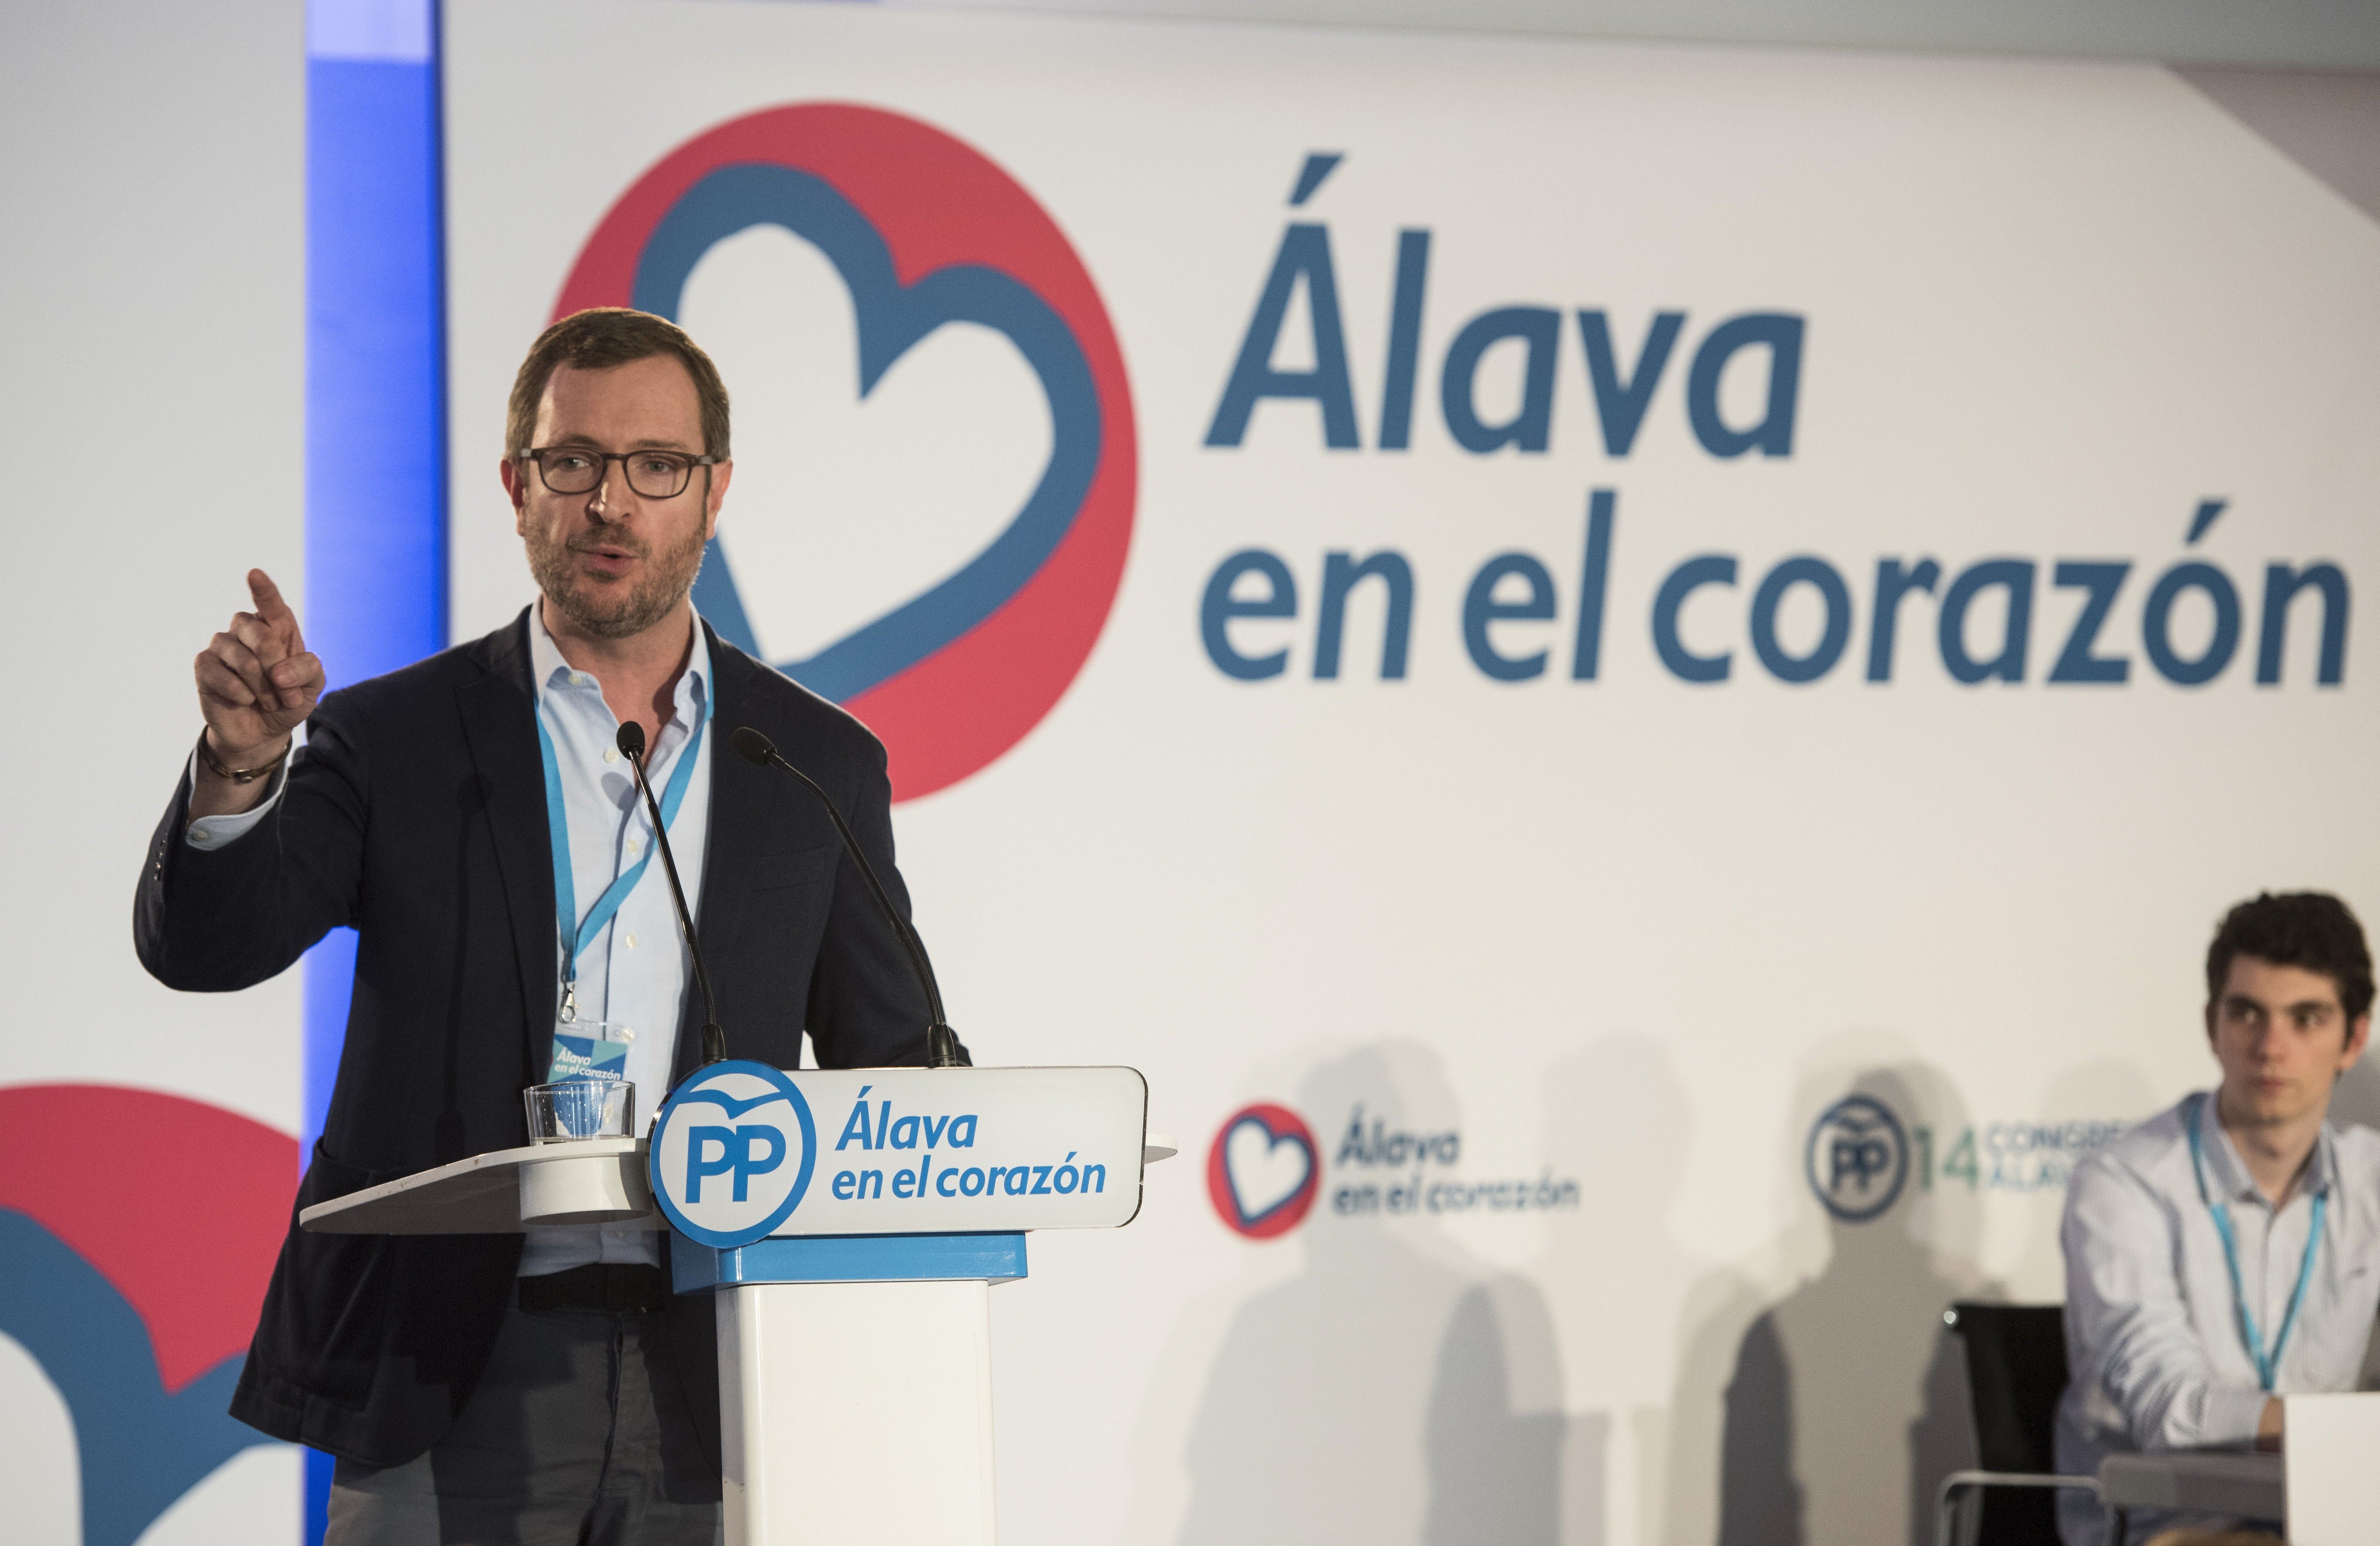 La 'solució basca' del PP contra el procés